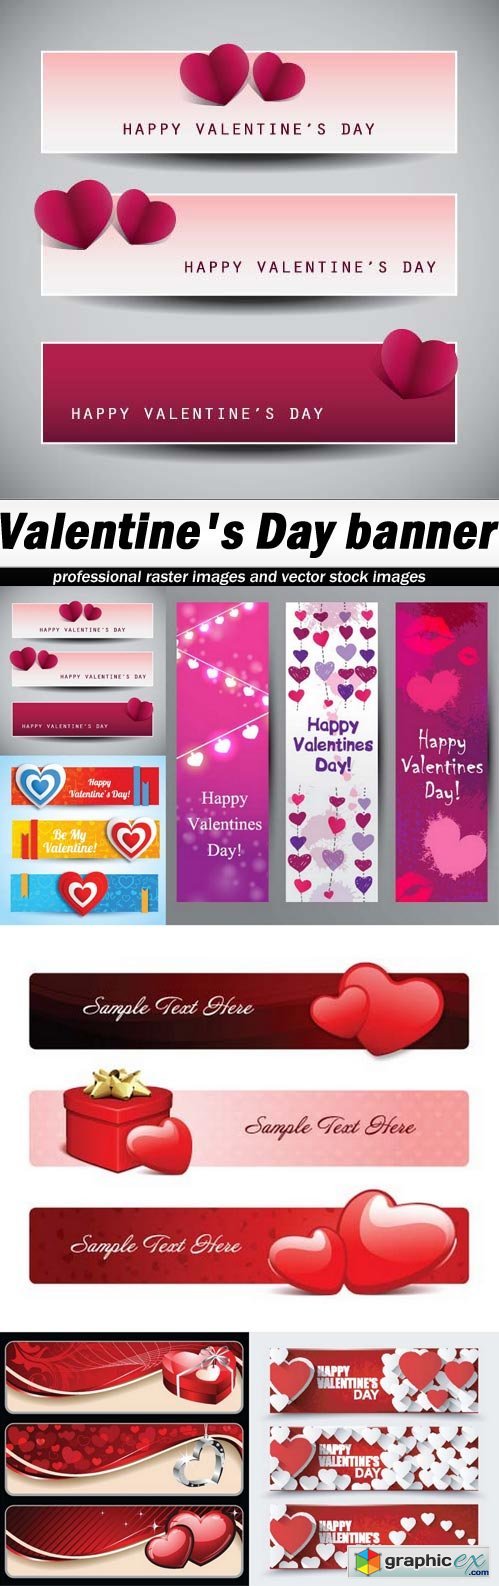 Valentine's Day banner